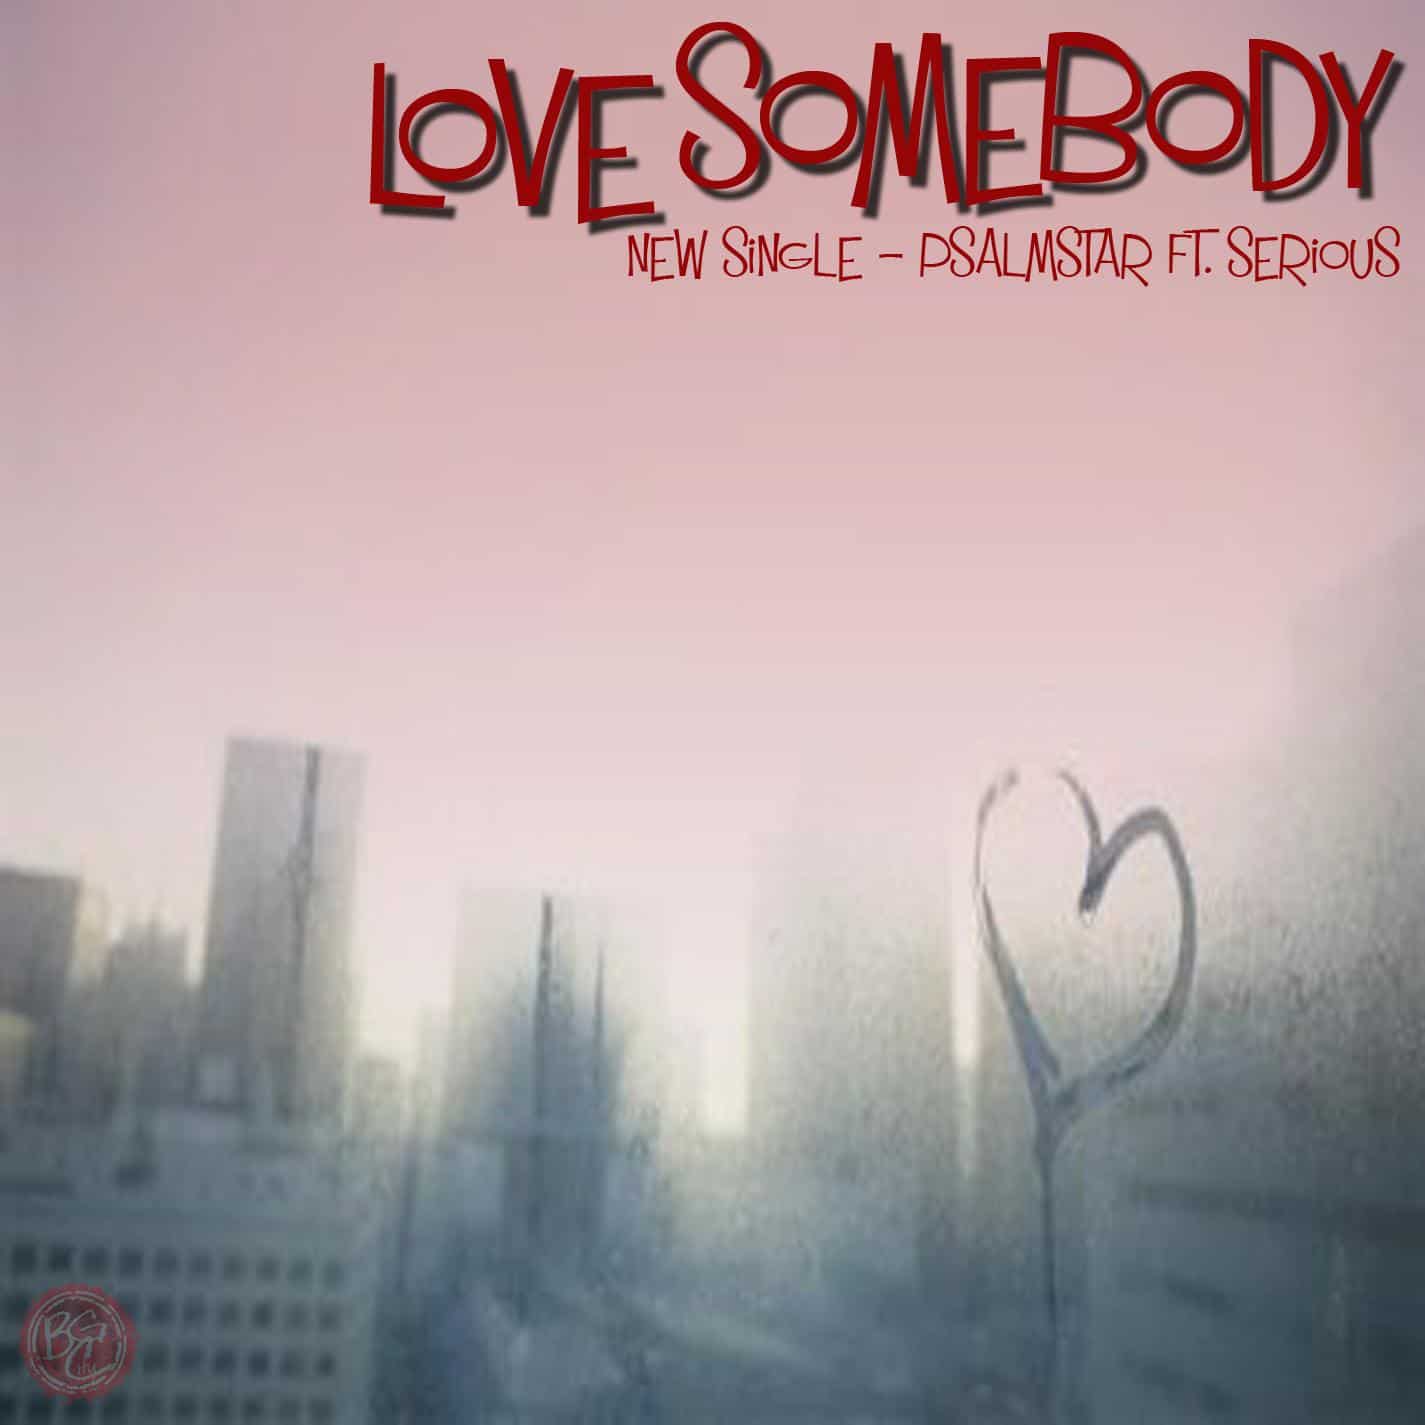 Love_somebody_cover1